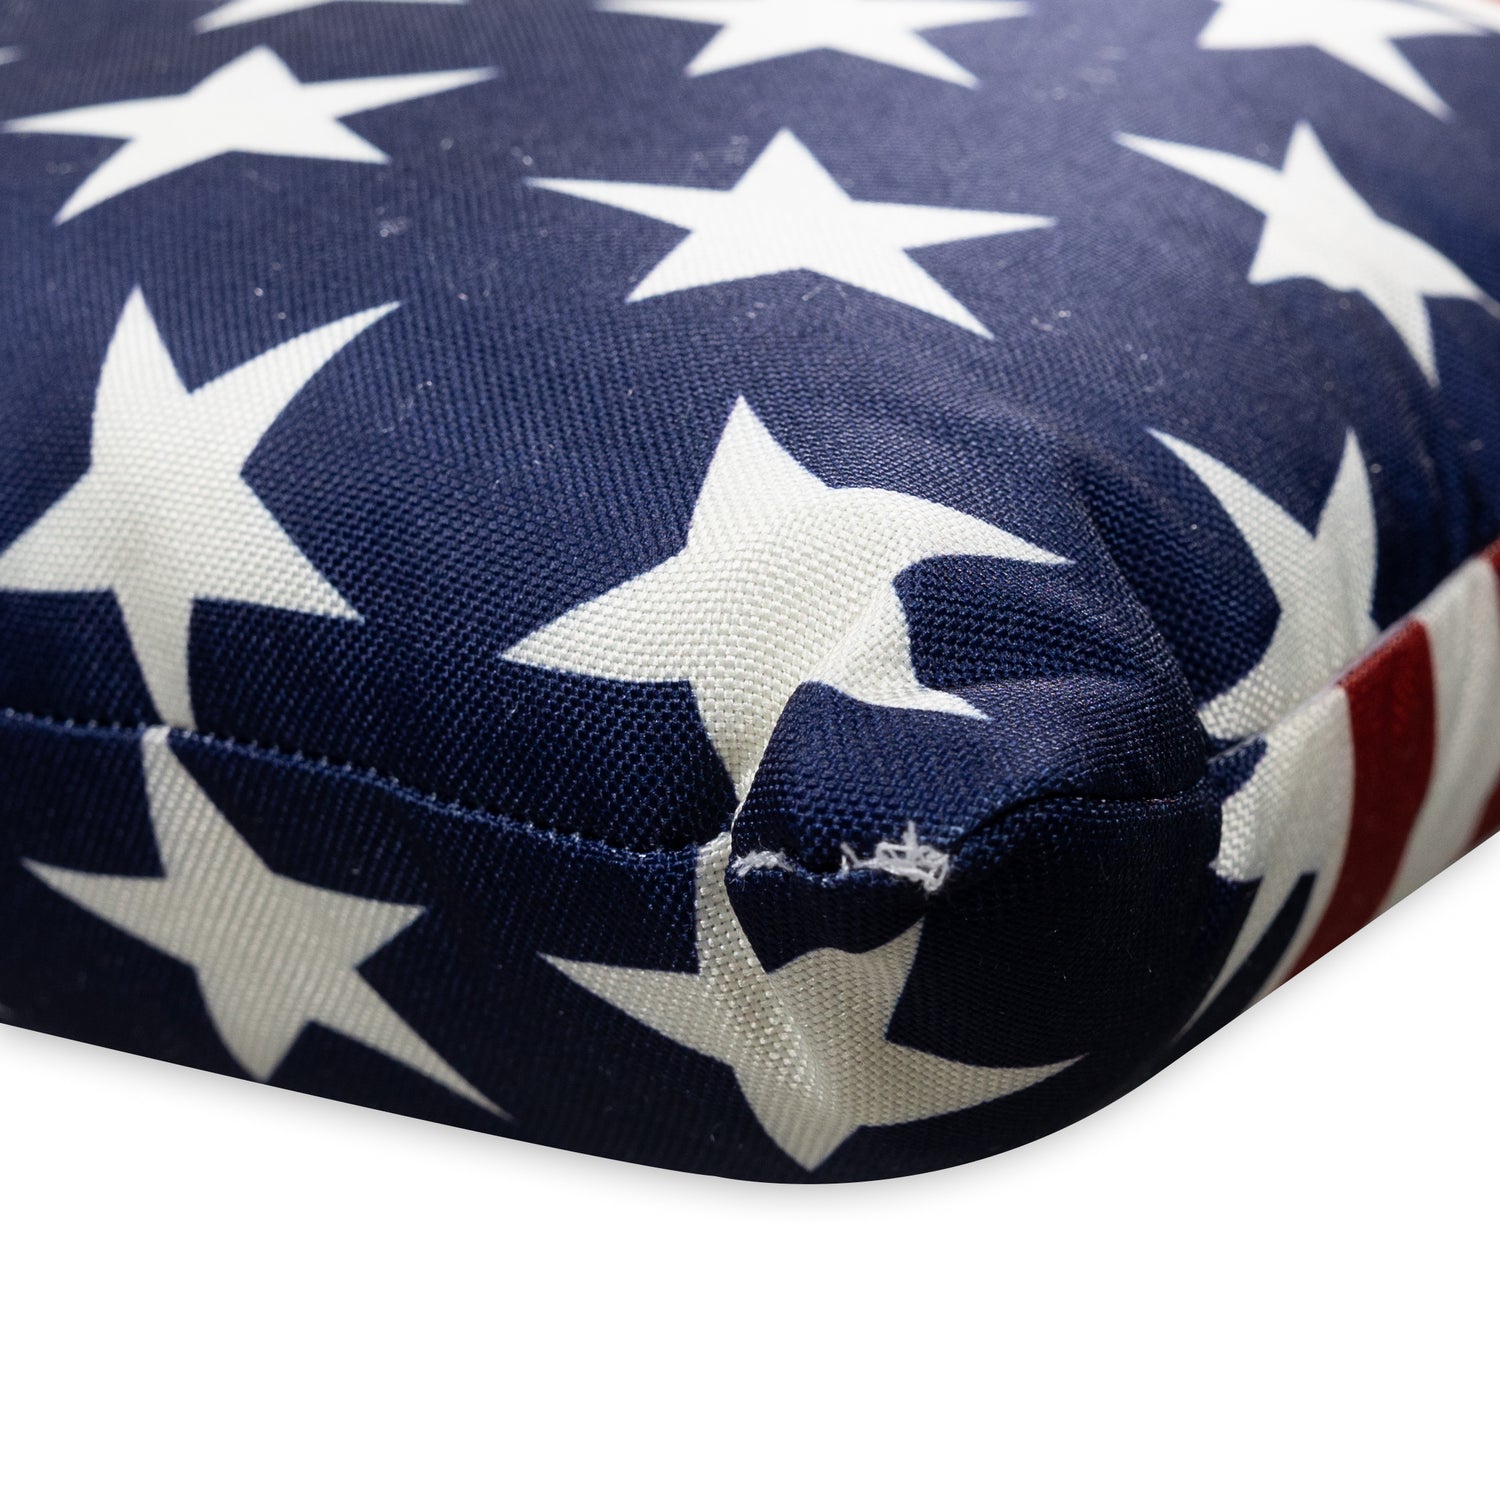 Texas A&M Americana Decor Pillow